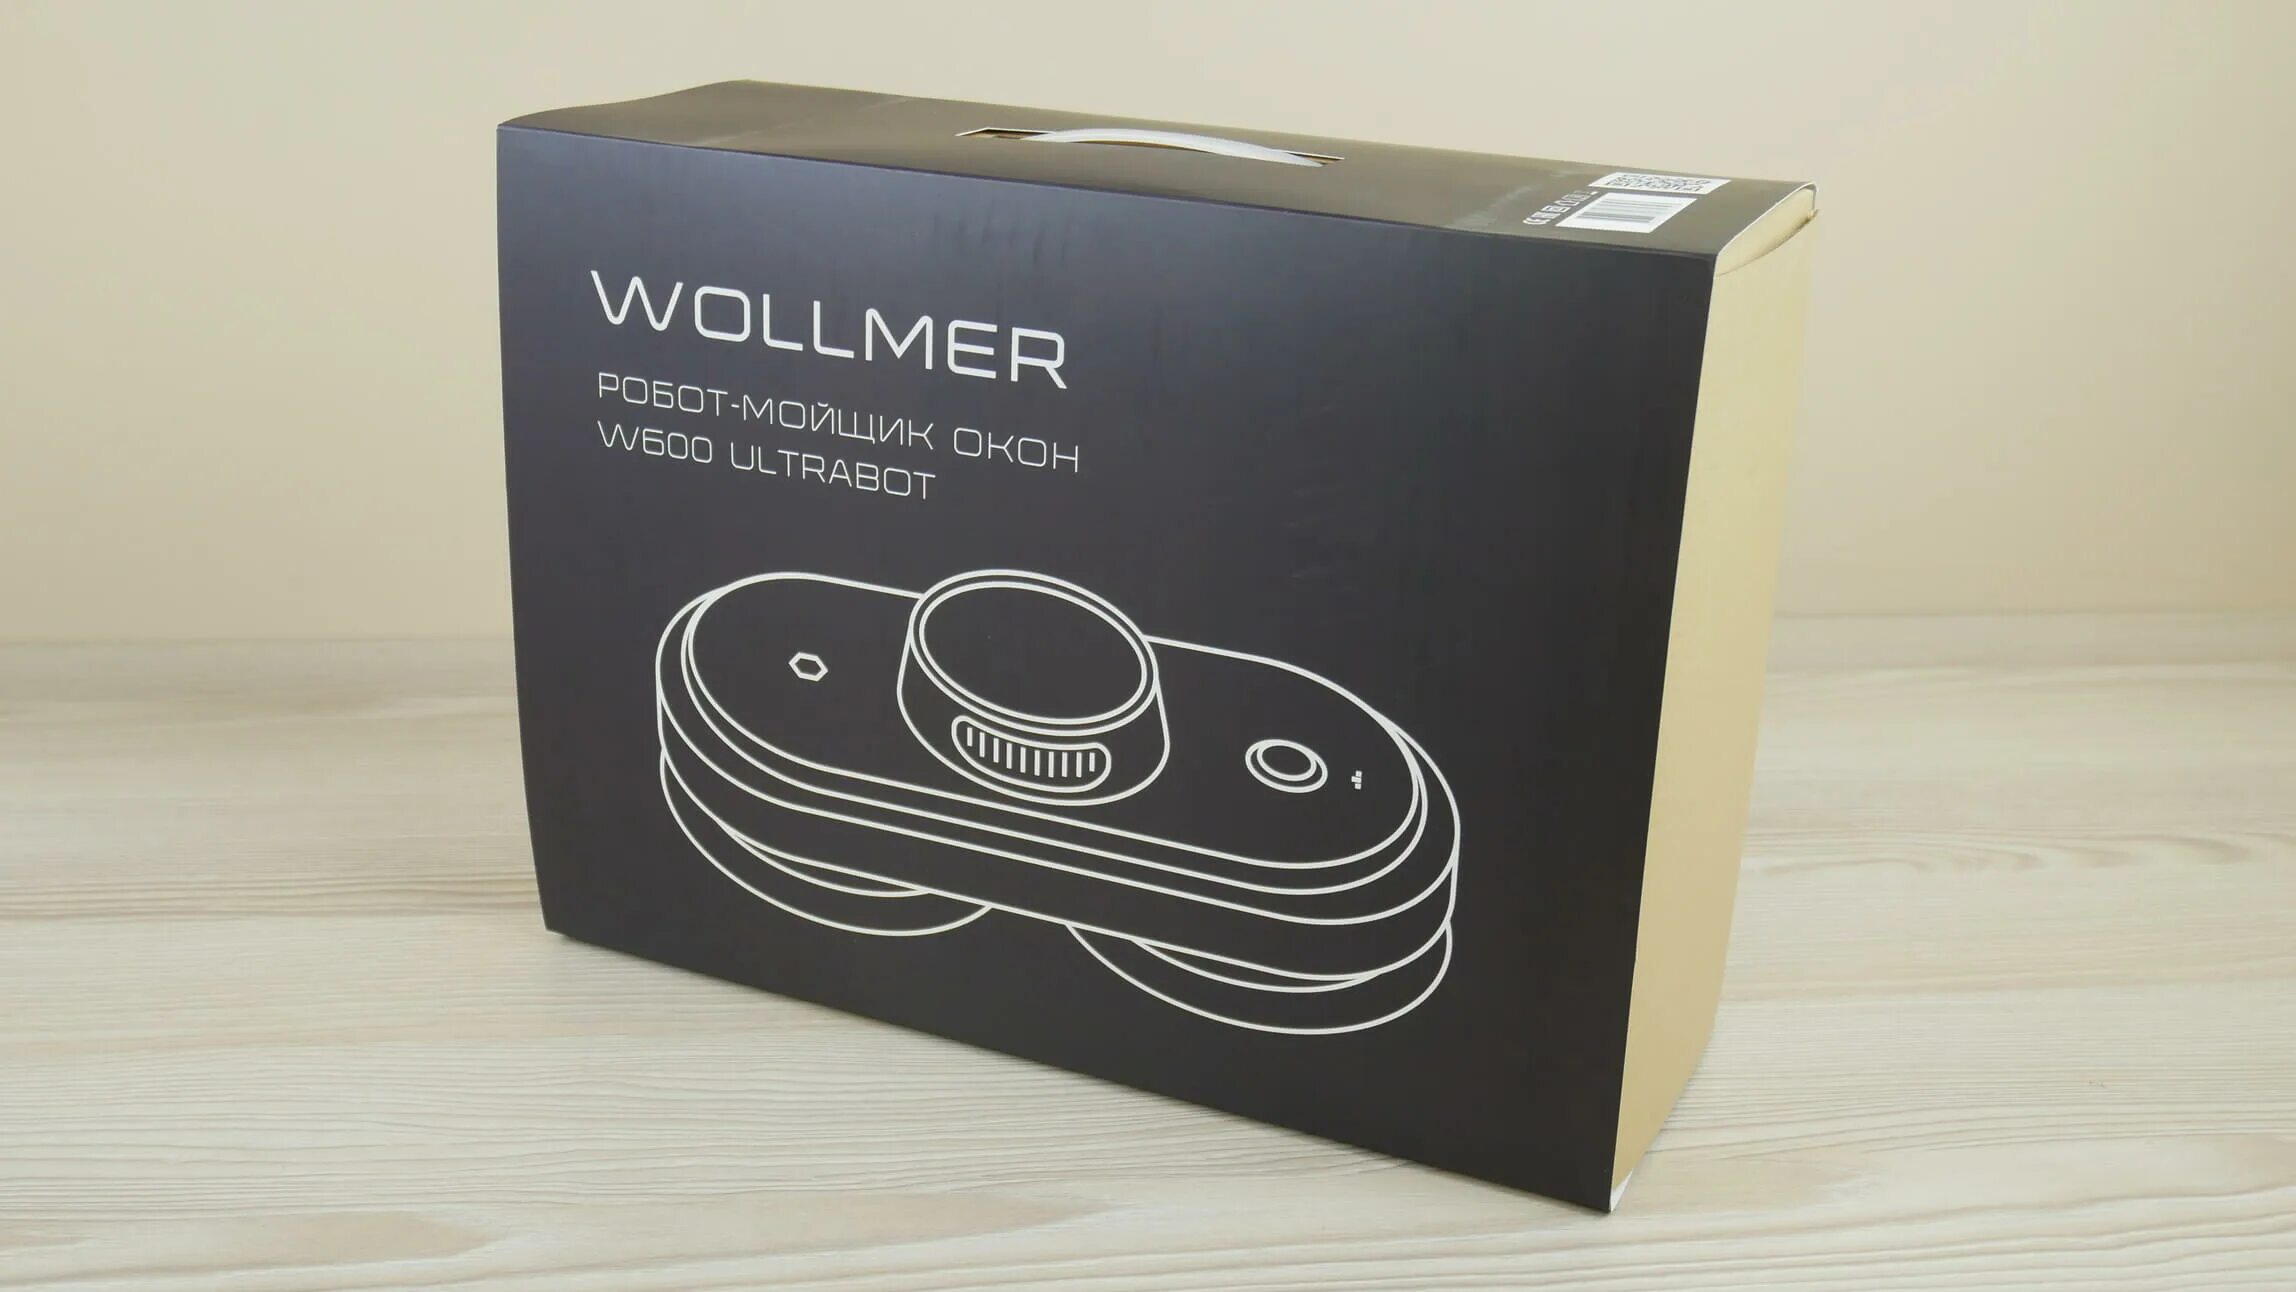 Робот Wollmer w600 Ultrabo. Робот-стеклоочиститель Wollmer w600 Ultrabot. Wollmer w600 Ultrabot мойщик. Wollmer w600 Ultrabot характеристики.